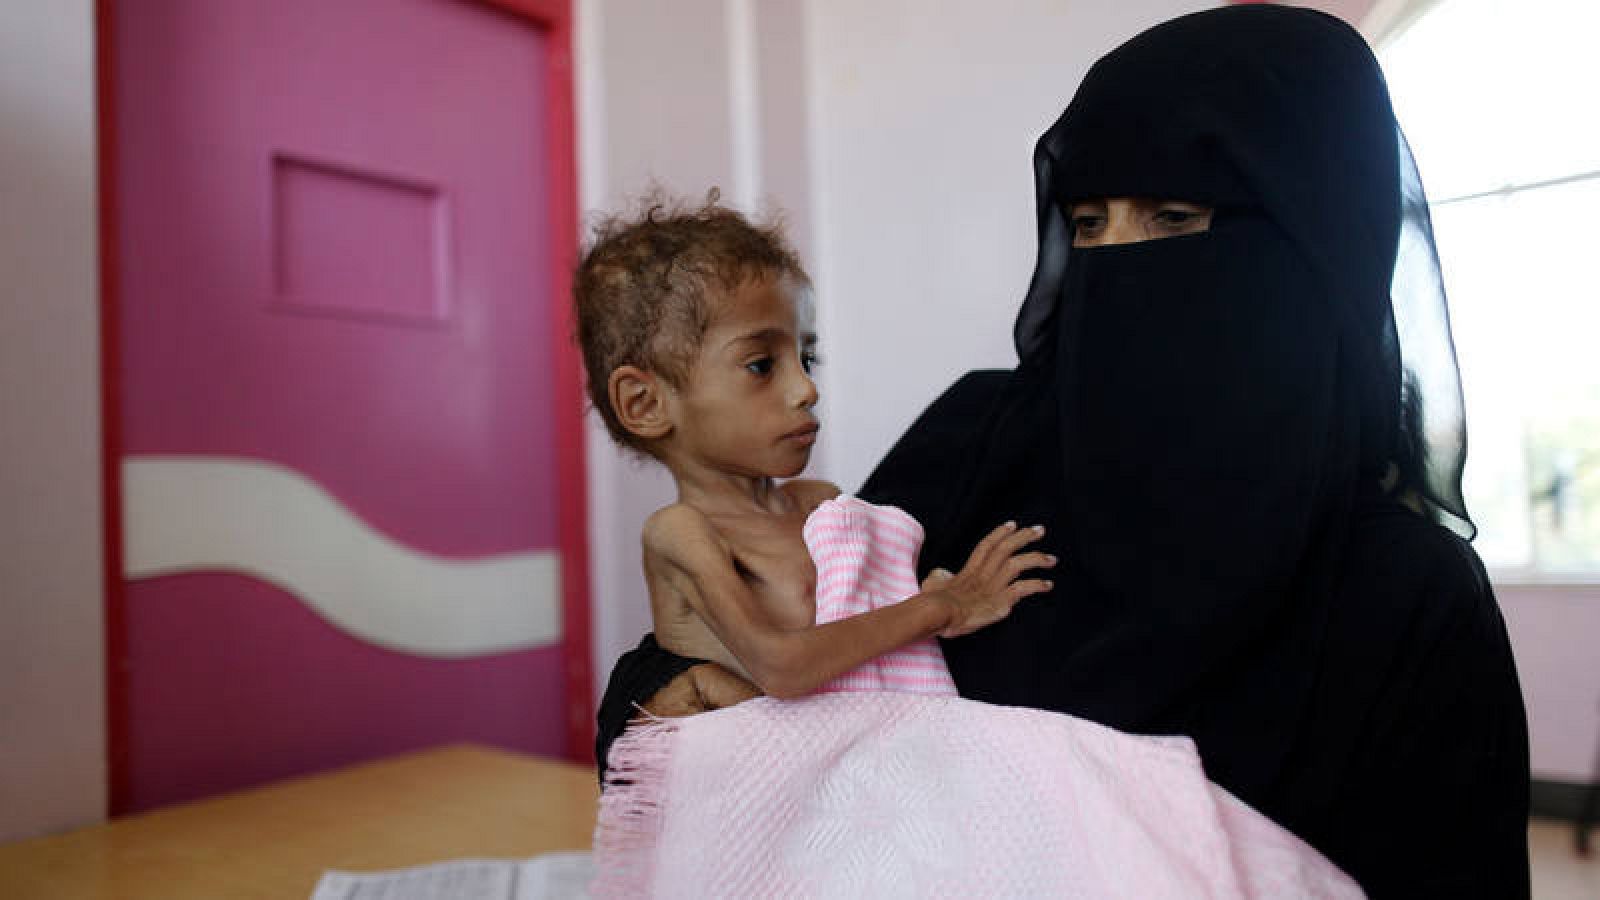  La vida de 400.000 niños yemeníes peligra por malnutrición severa aguda según denuncia Unicef